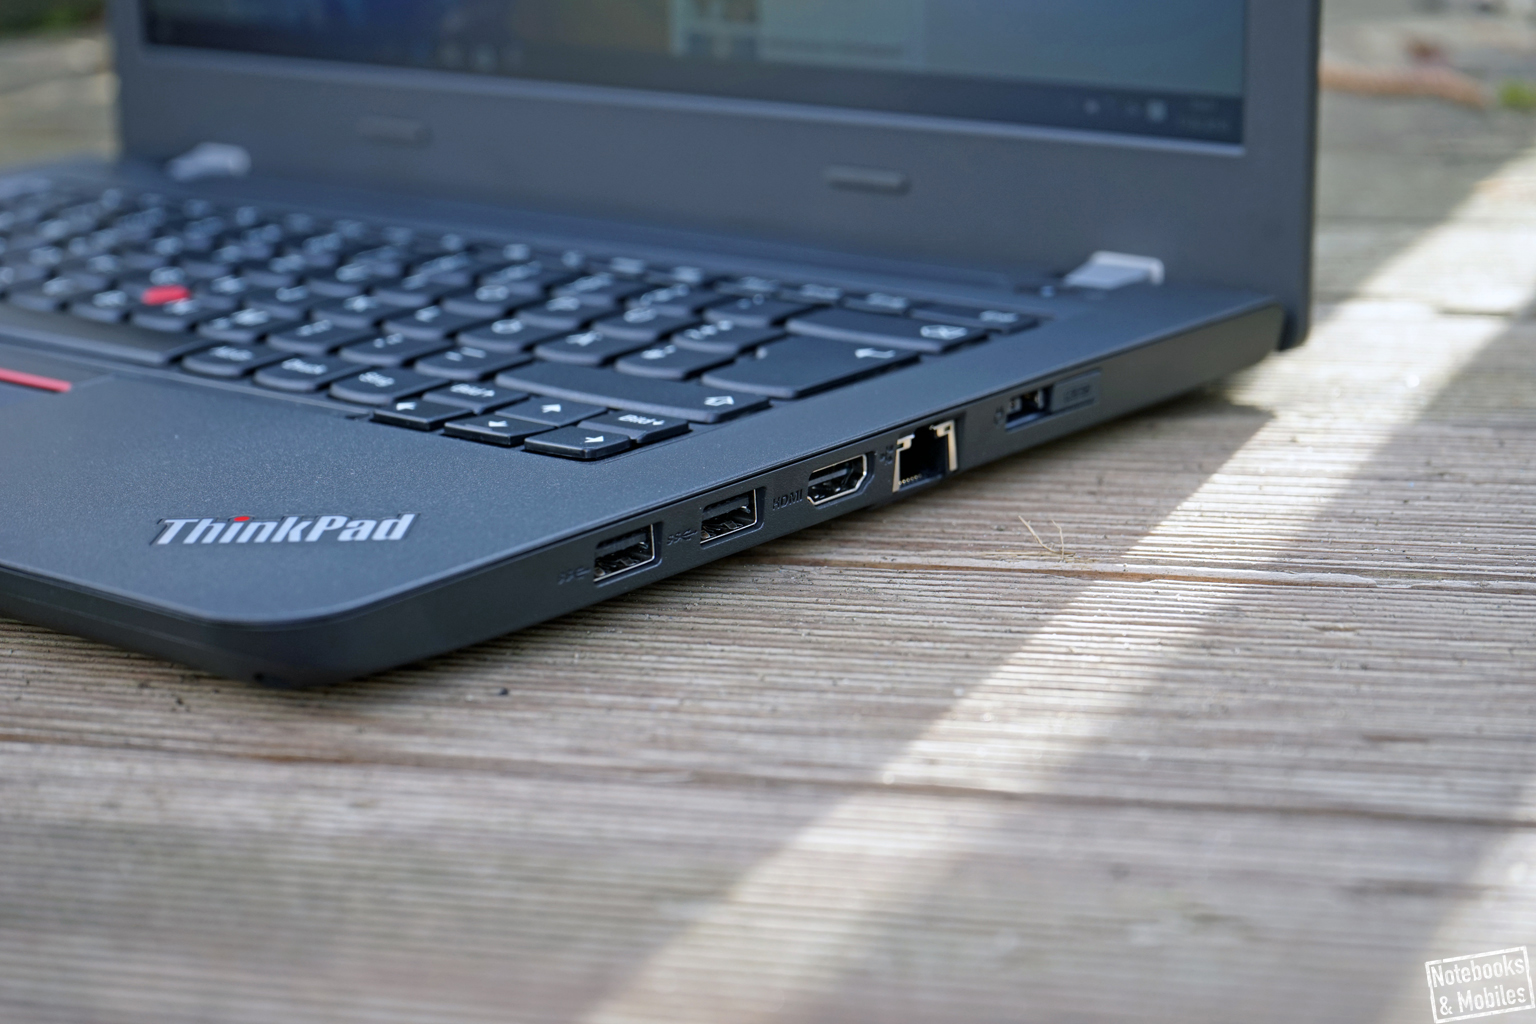 Lenovo ThinkPad E460